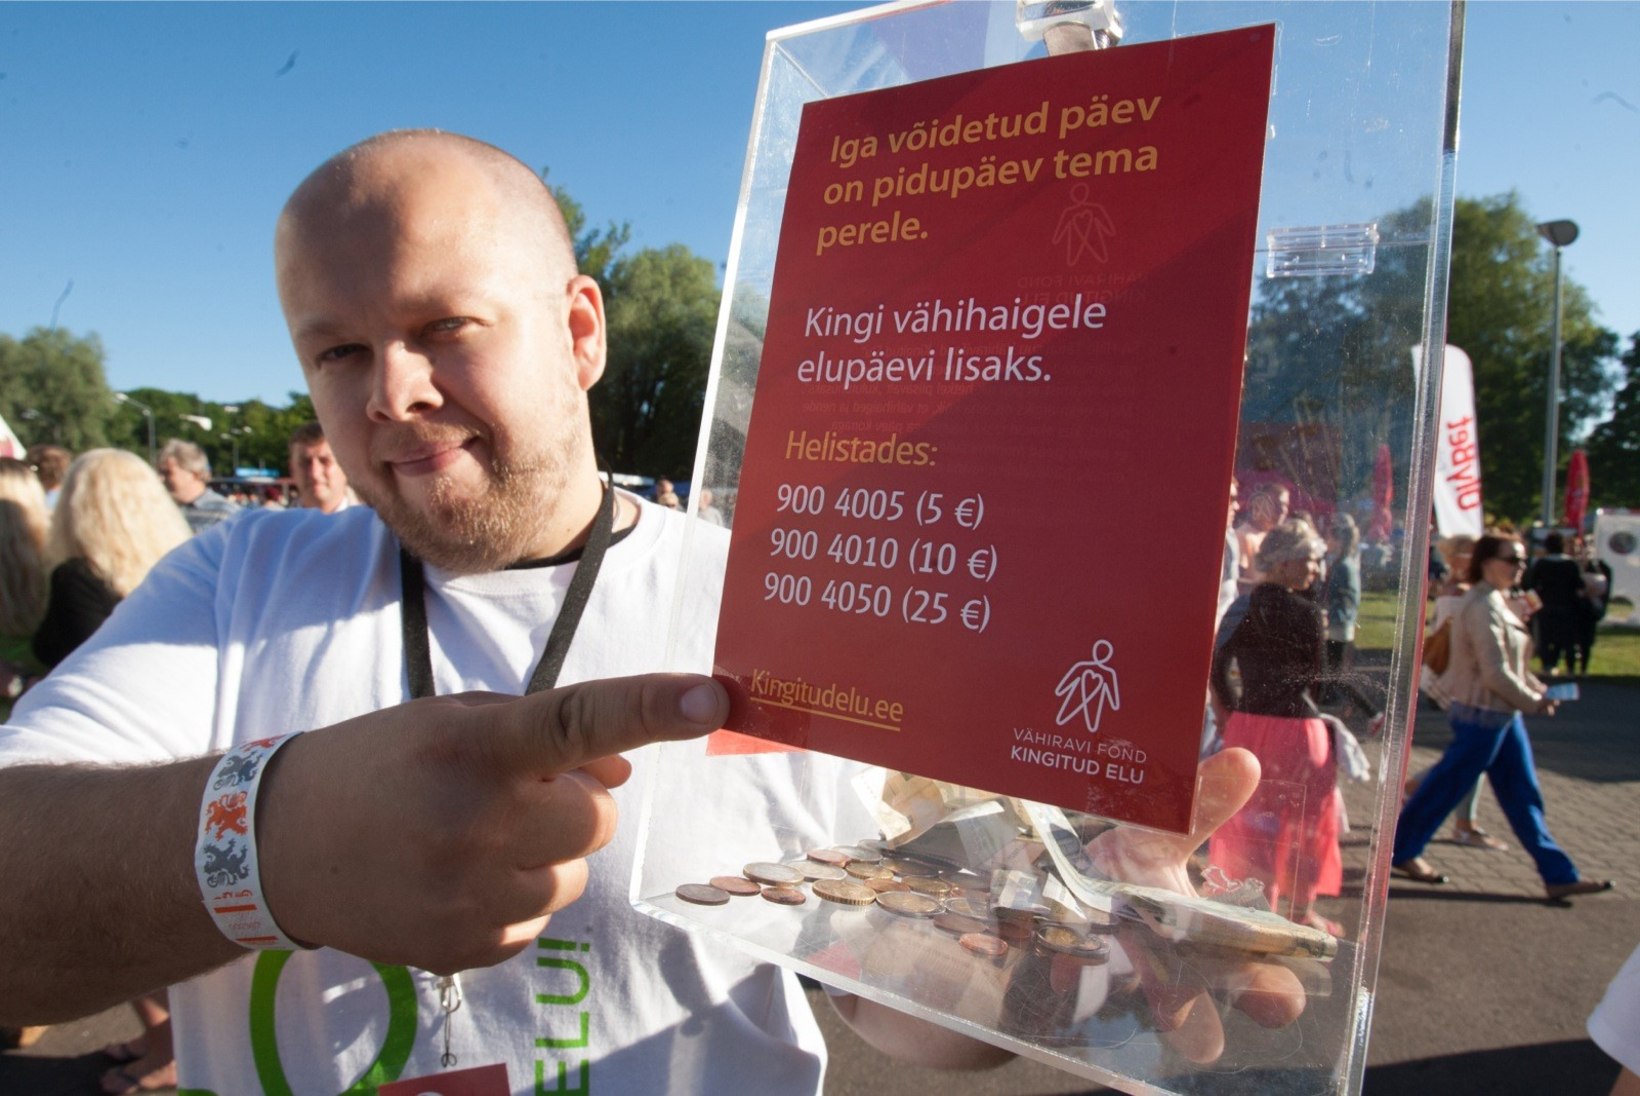 Vähiravifond on tänavu Eesti inimesi toetanud üle 300 000 euroga